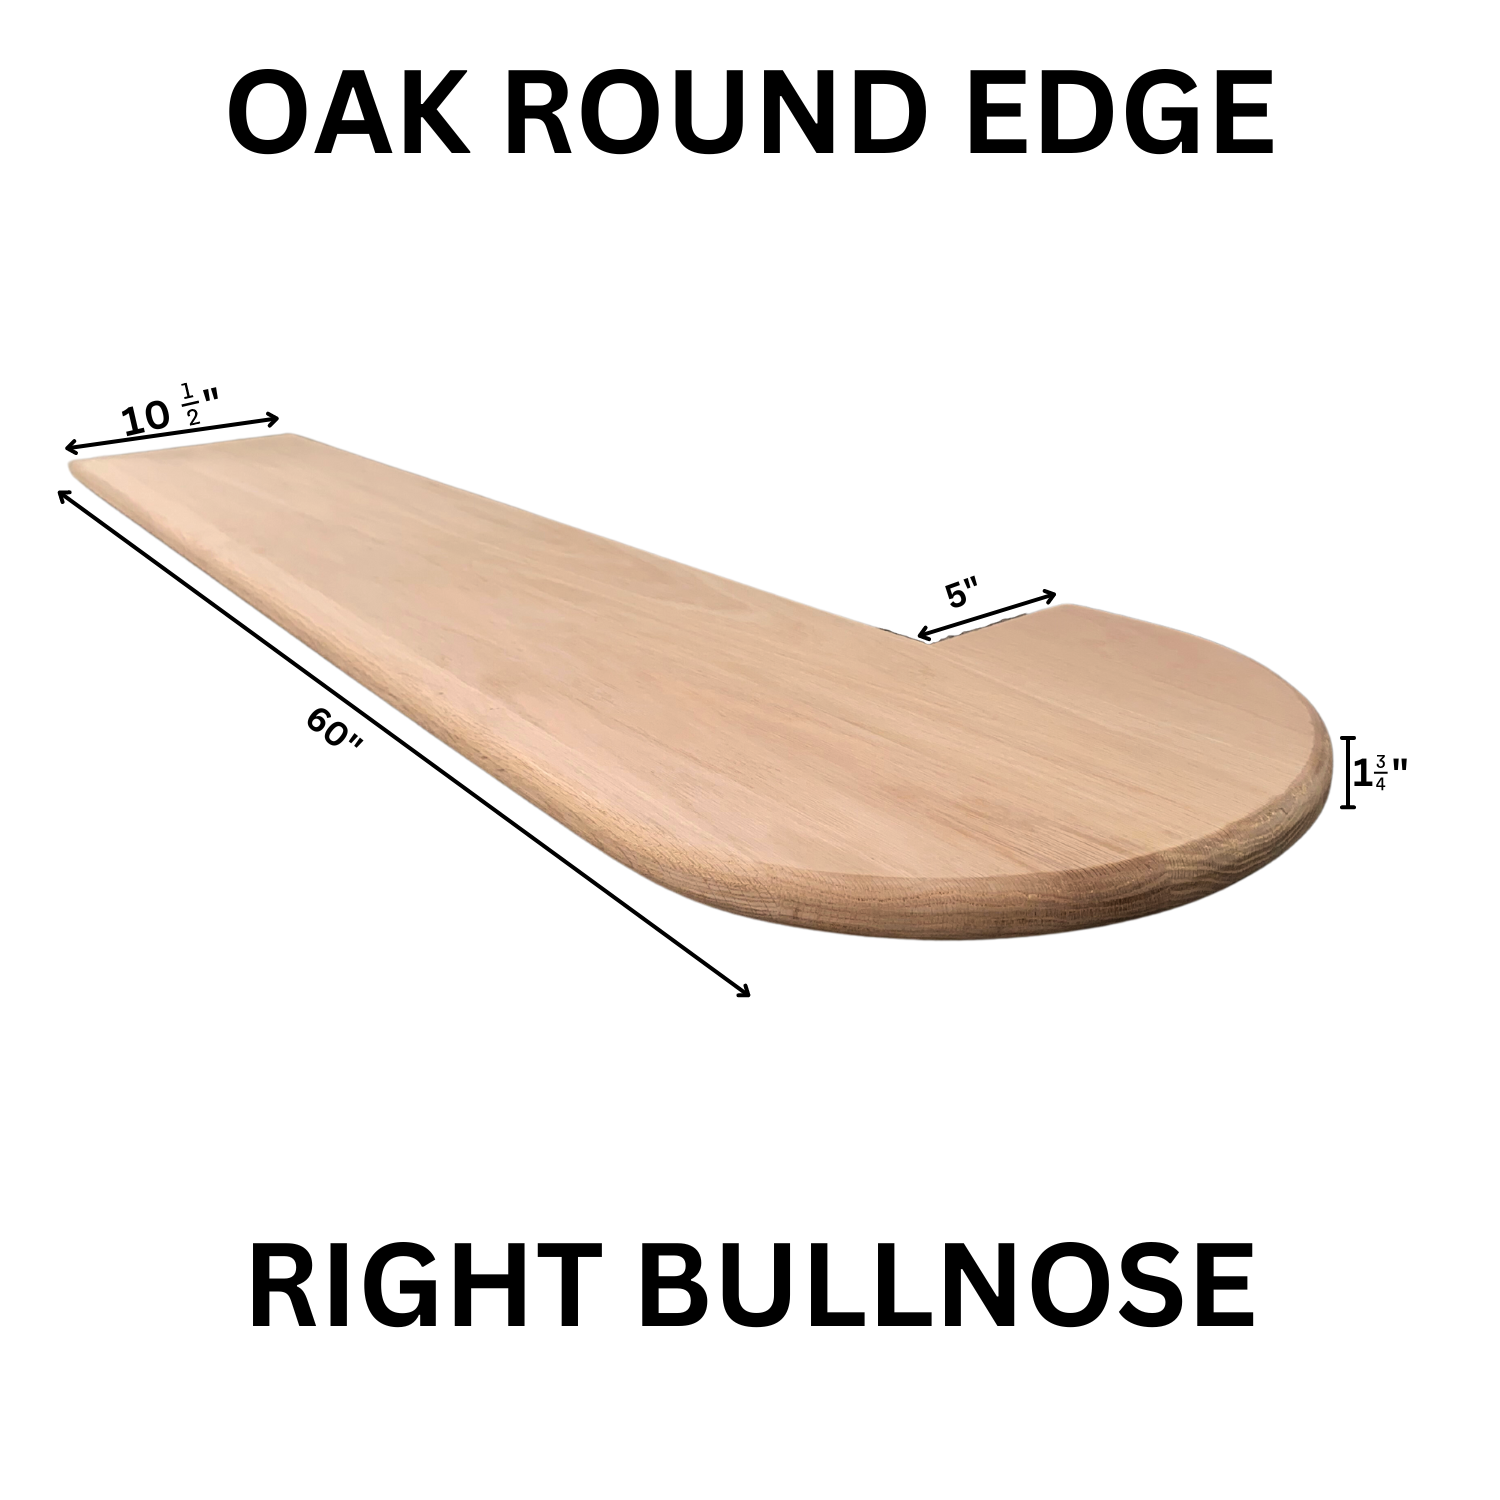 Red Oak Round Edge Tread Bullnose Right ORET-BR